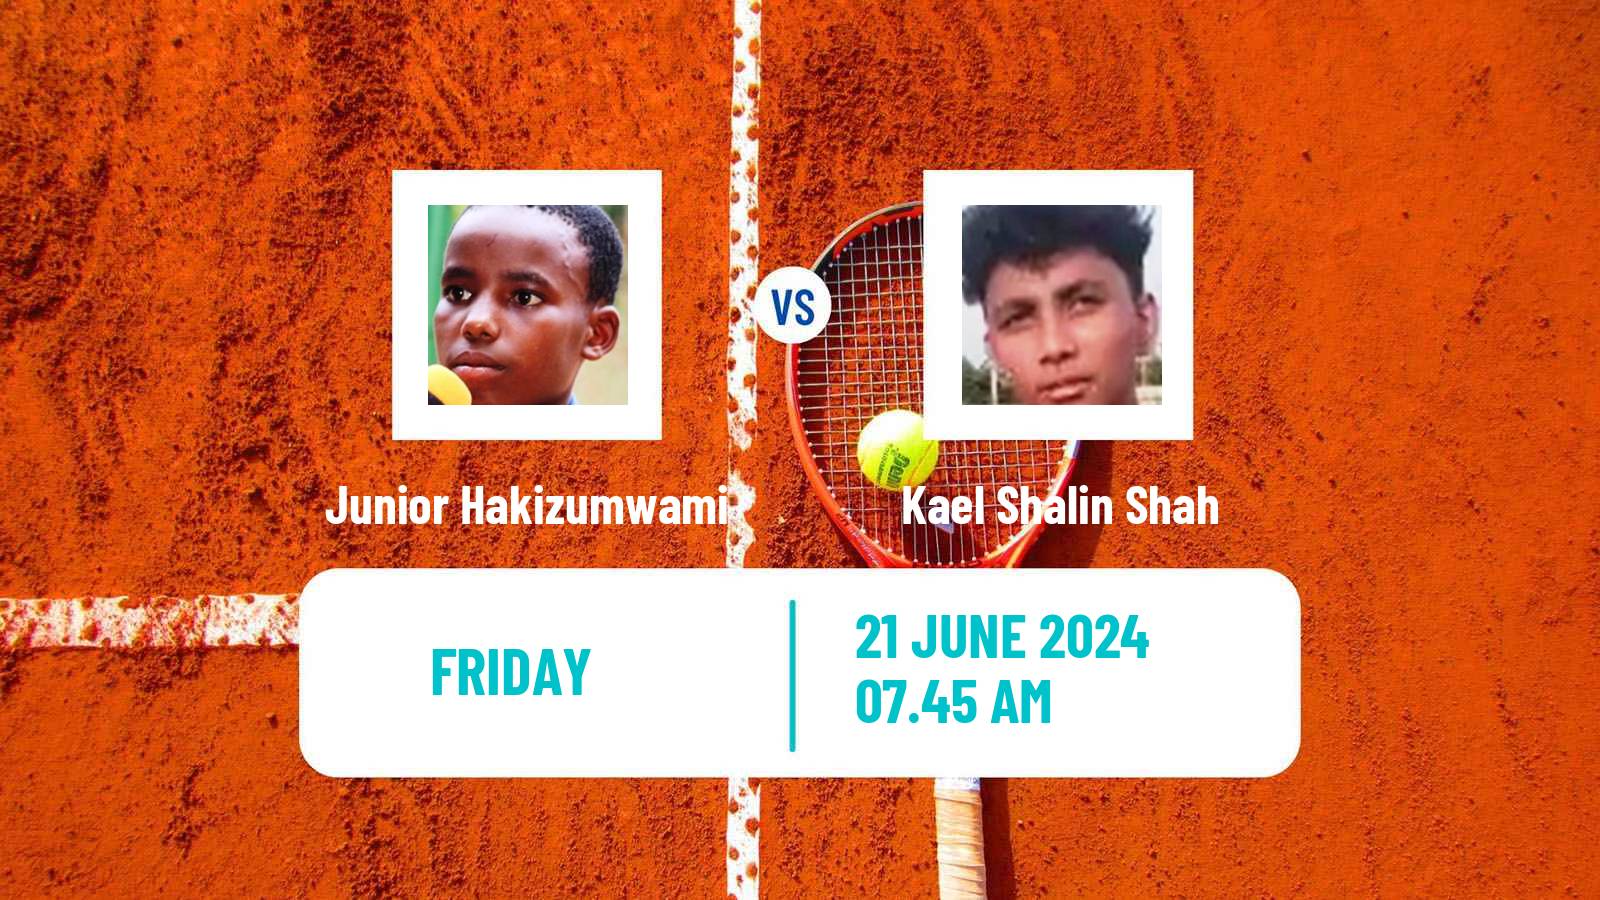 Tennis Davis Cup Group IV Junior Hakizumwami - Kael Shalin Shah